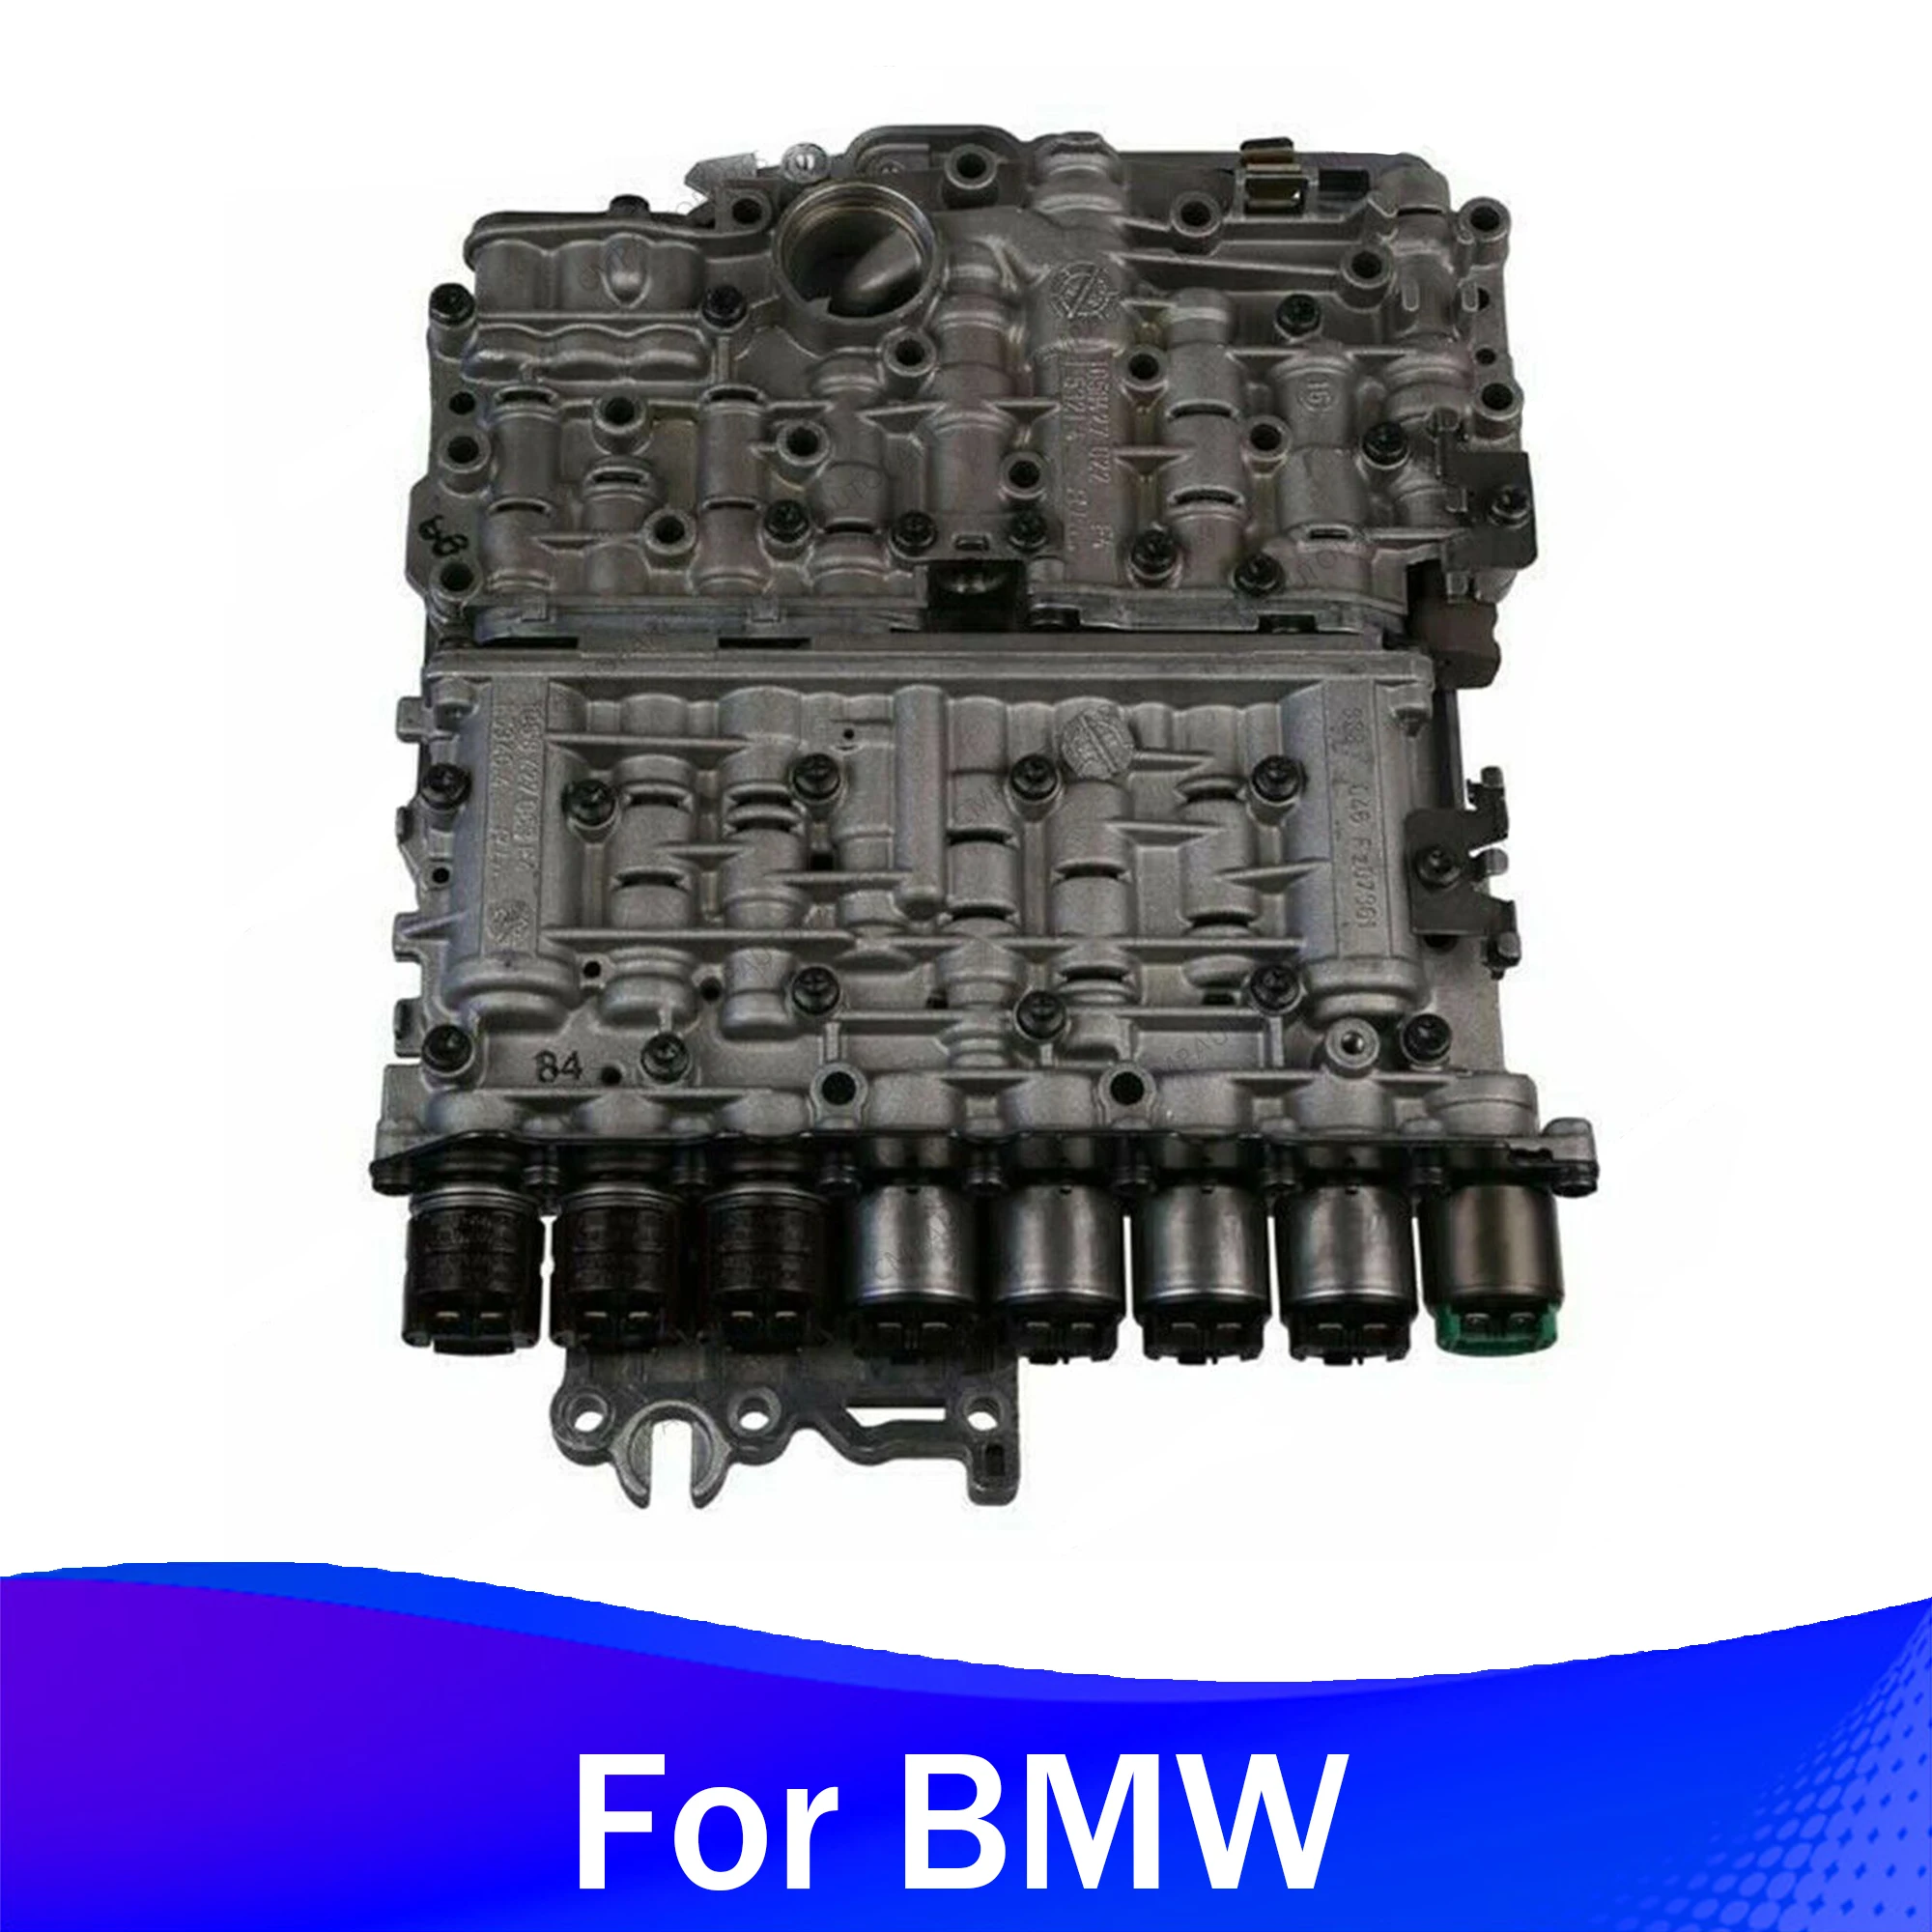 

Корпус клапана трансмиссии 5HP24 для 97-04 BMW X5 5 7 серии JAGUAR VANDEN 4.0L